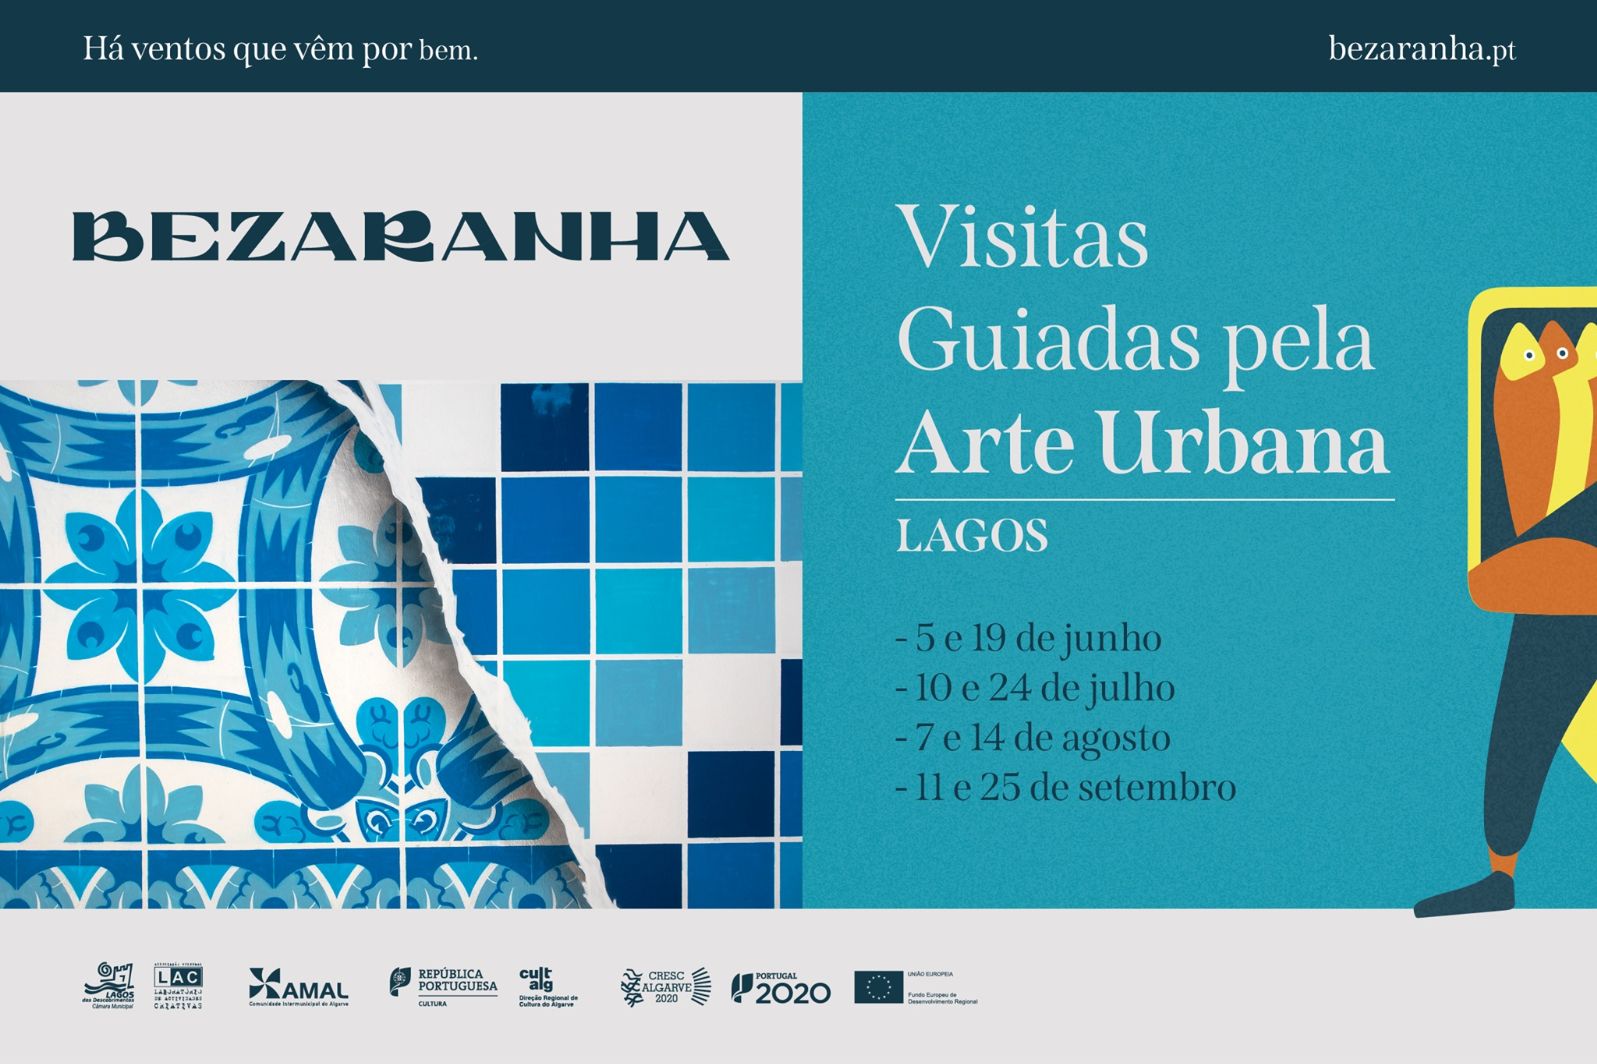 Projecto "Bezaranha" chega a Lagos em Junho com "Visitas guiadas pela Arte Urbana"